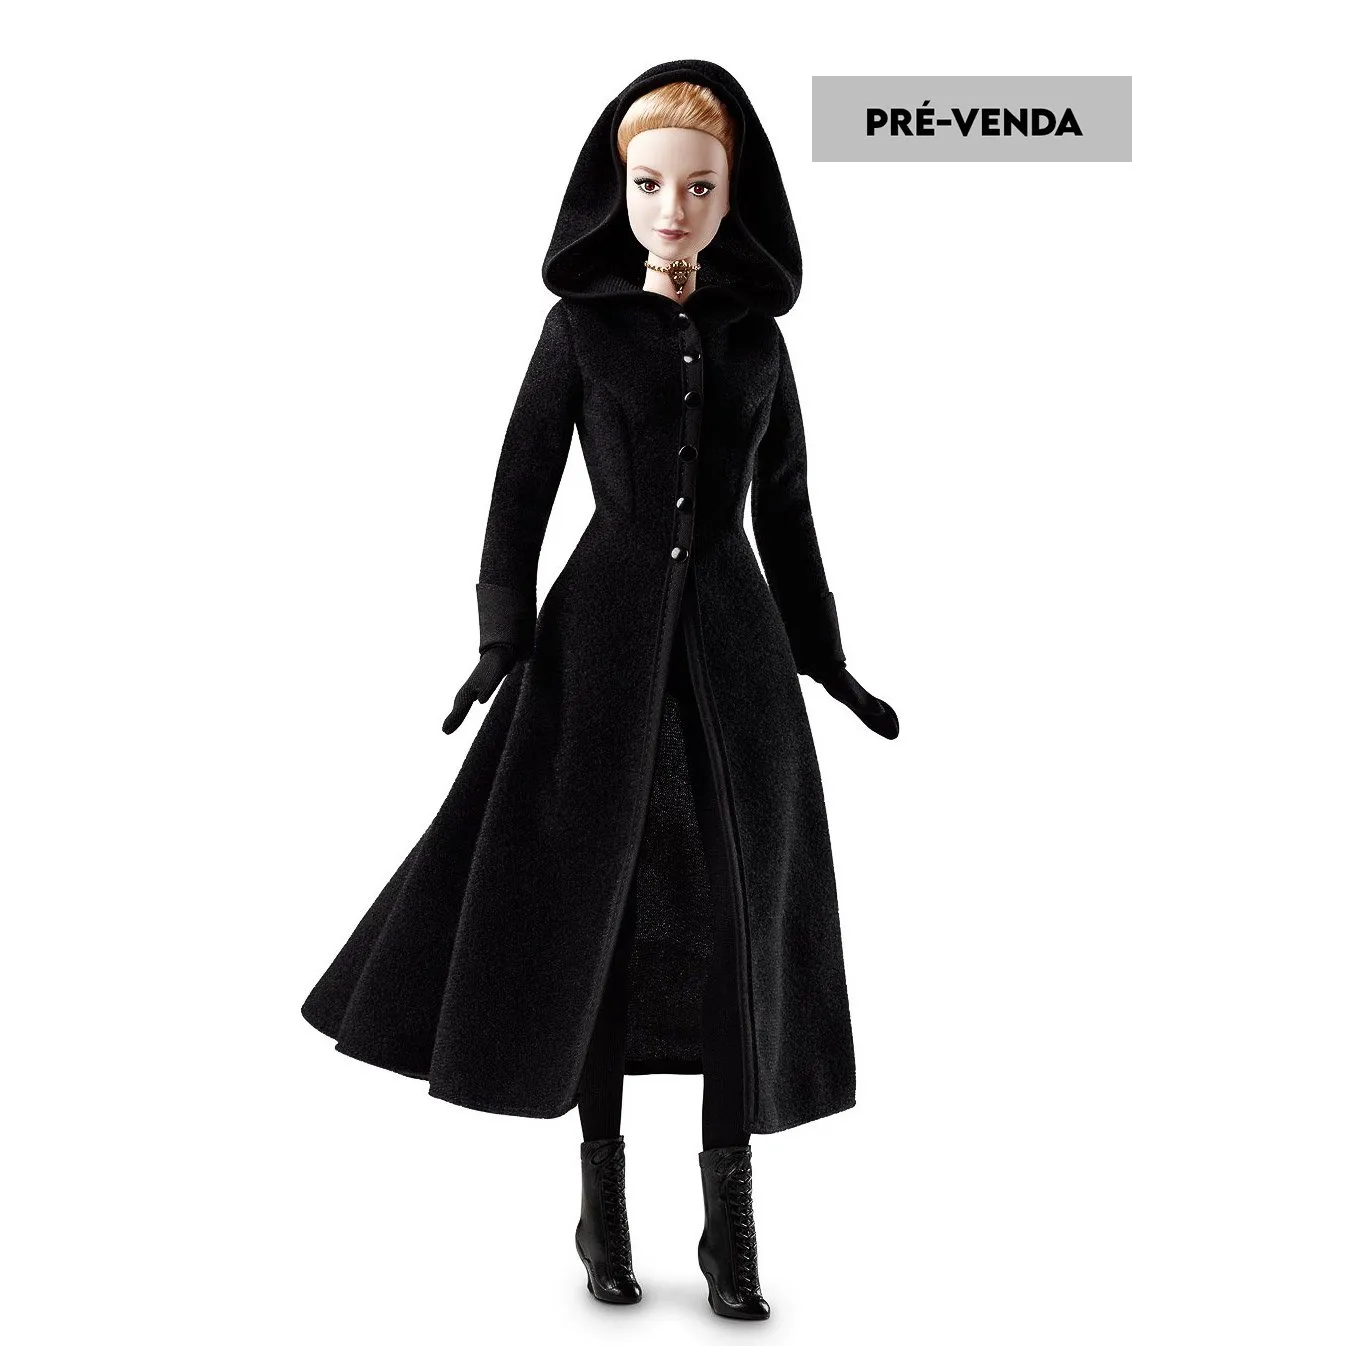  PRÉ-VENDA Boneca Barbie Collector The Twilight Saga Eclipse Jane - Mattel